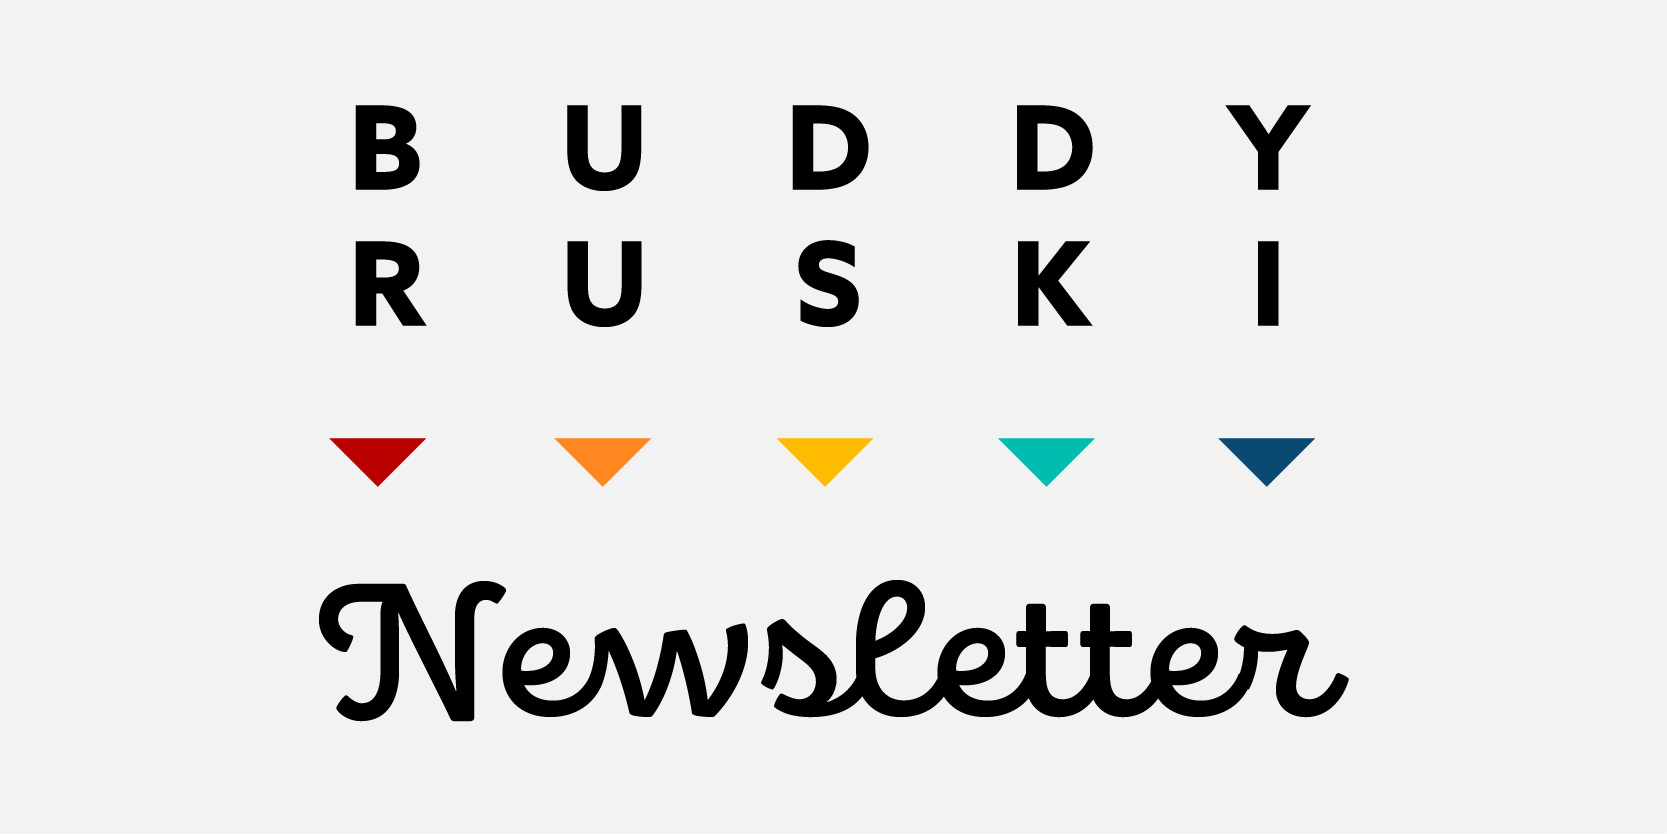 Buddy Ruski Newsletter 05.04.21